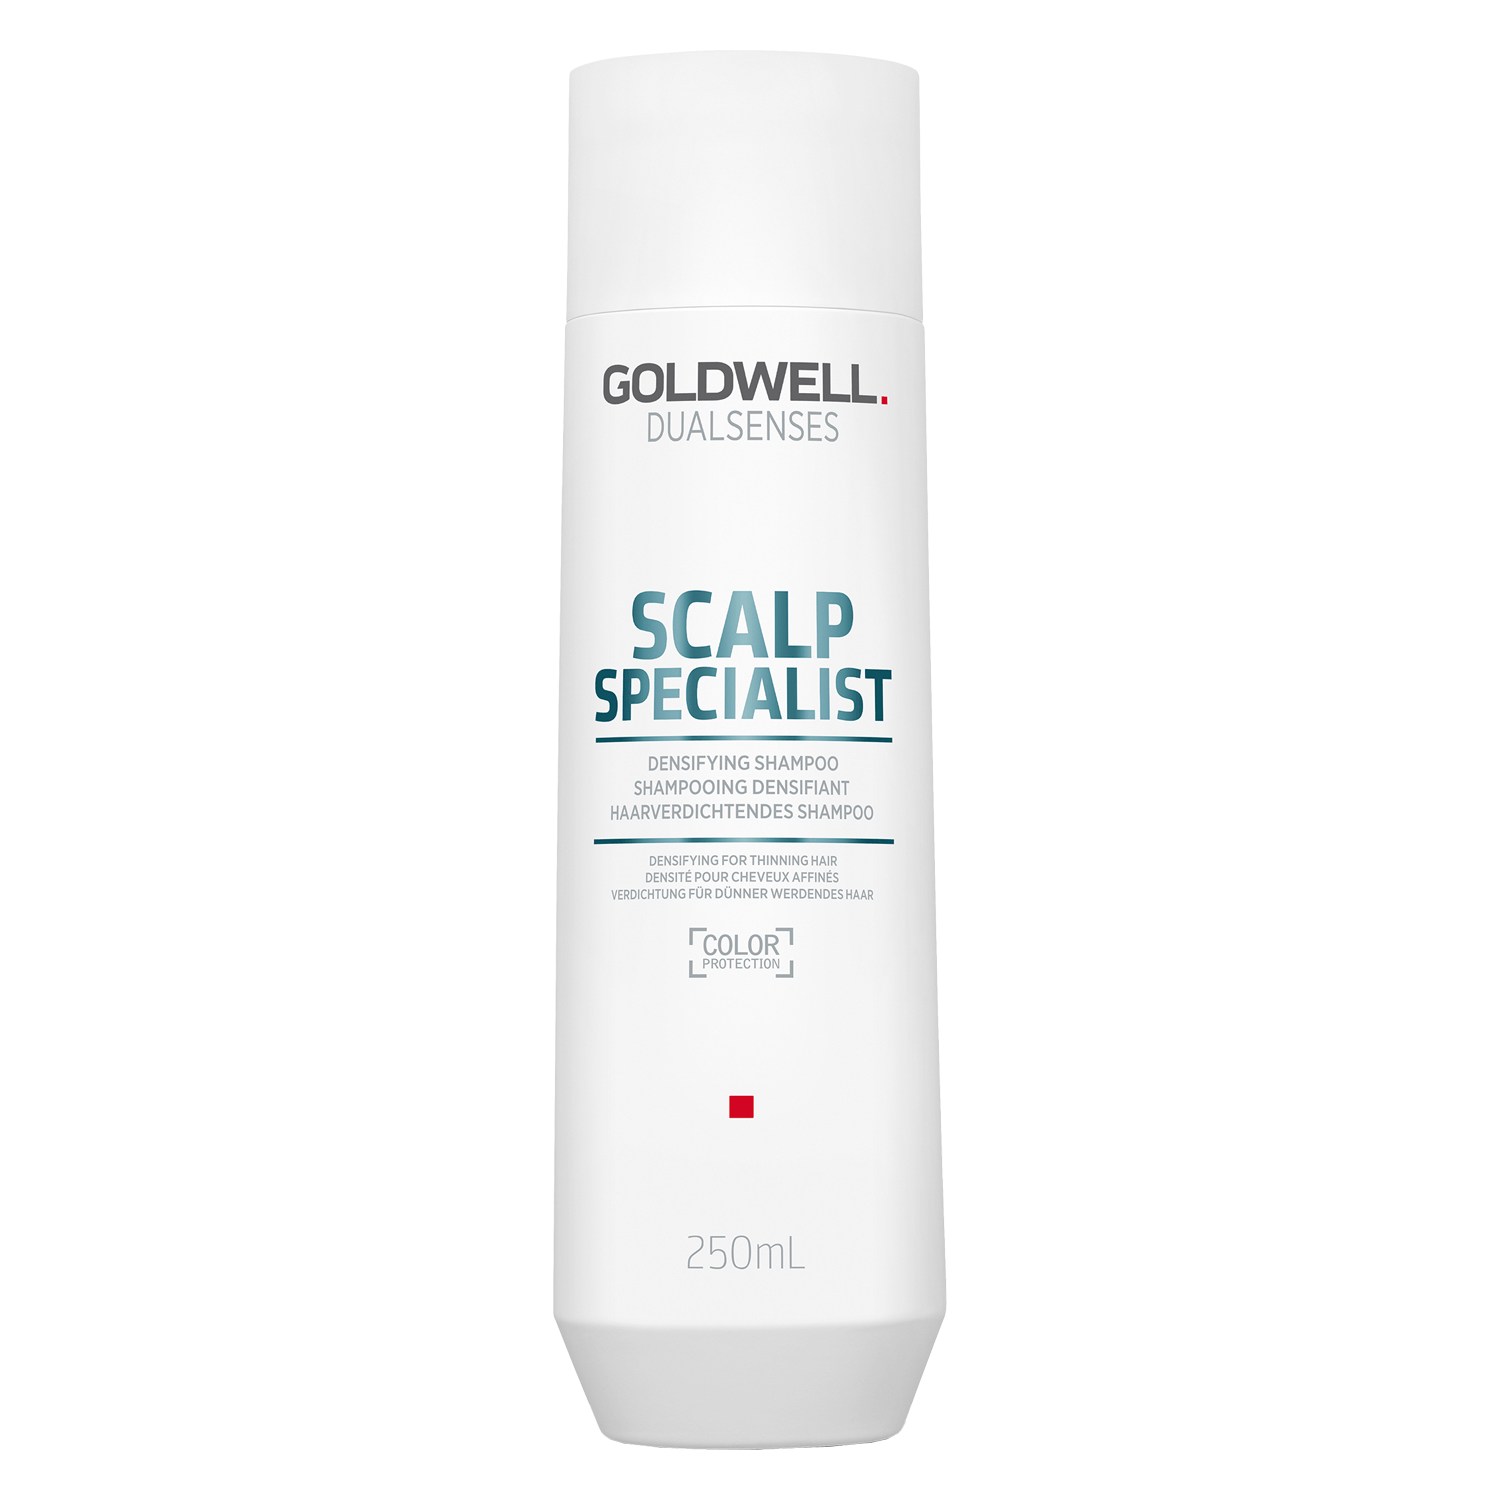 Produktbild von Dualsenses Scalp Specialist - Densifying Shampoo